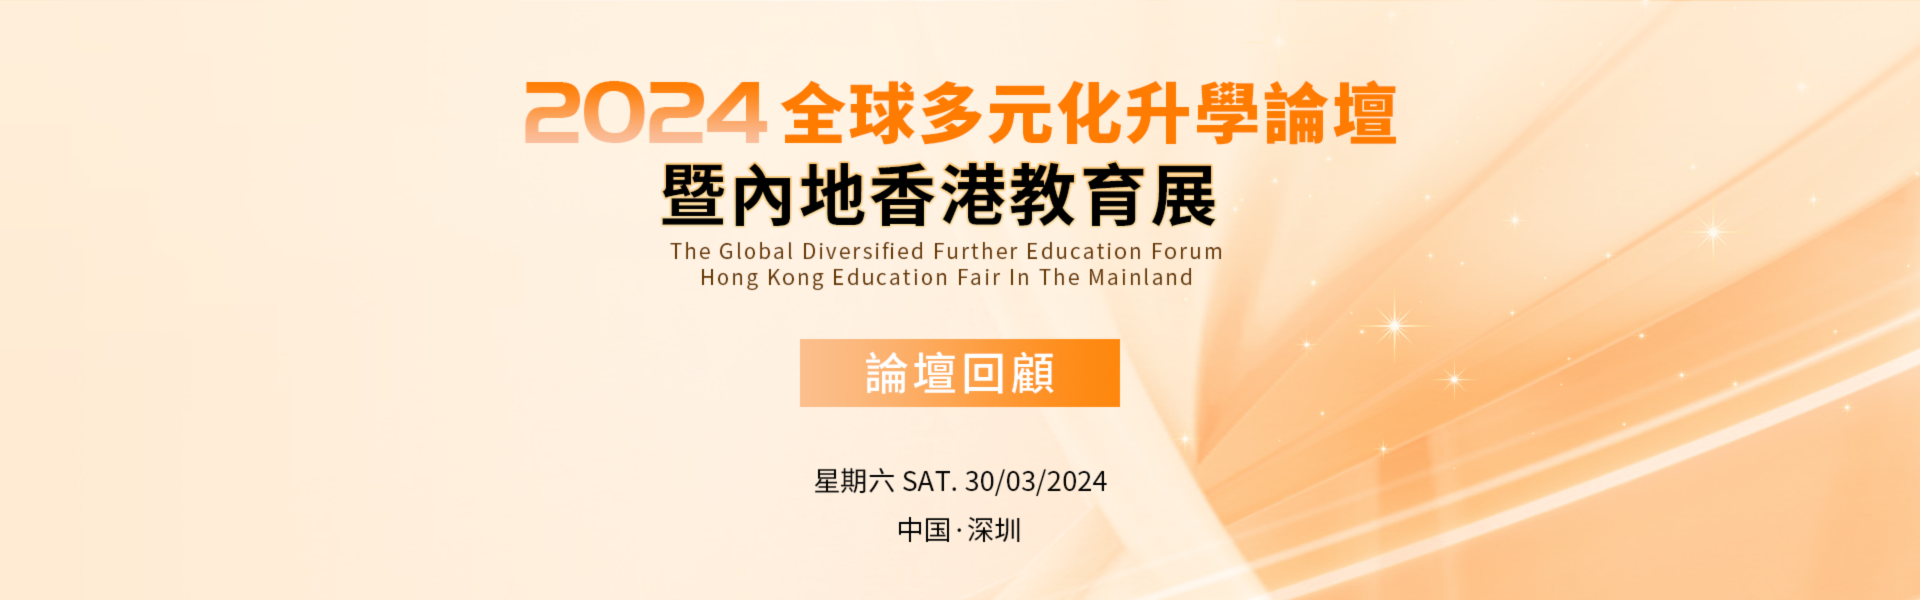 2024全球多元化升学论坛暨内地香港教育展